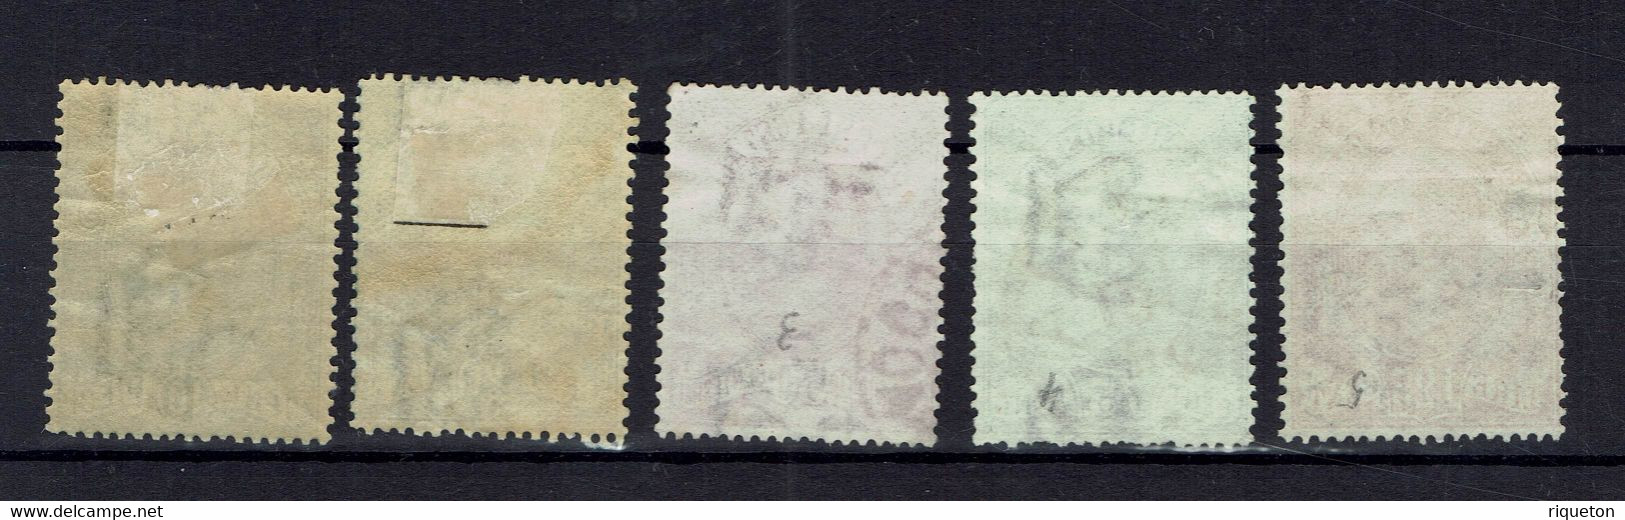 Italie. 1884-86. Timbres Pour Colis Postaux N° 1 à 5. Cote : 162.50 Euros - Colis-postaux